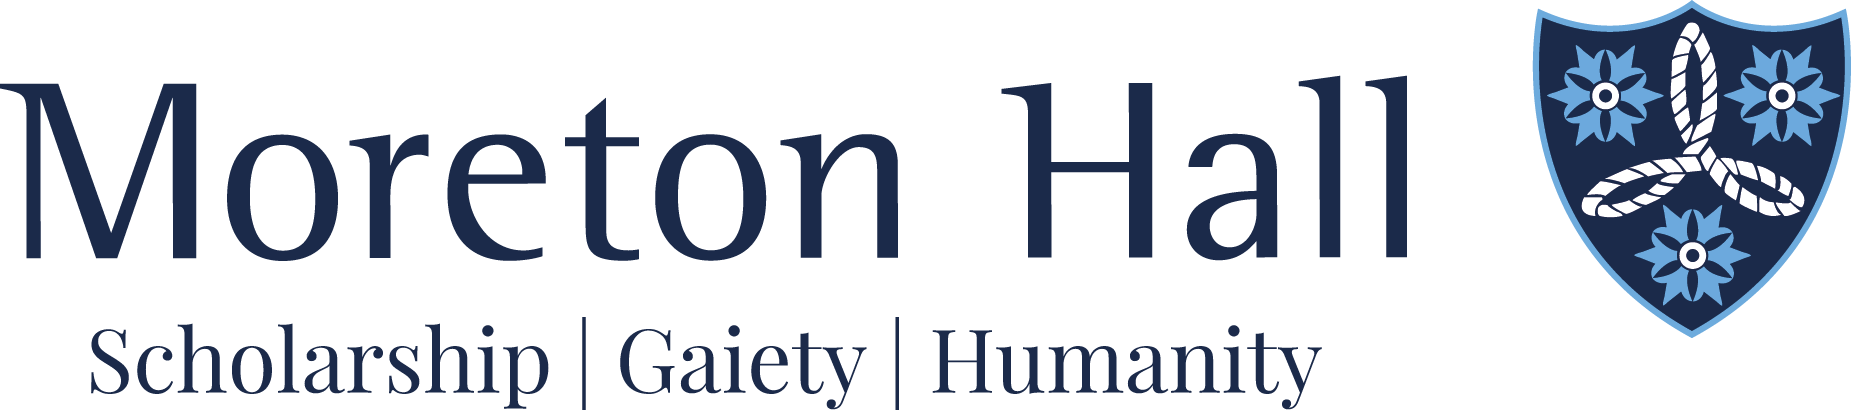 New-Moreton-Hall-logo-2020.png